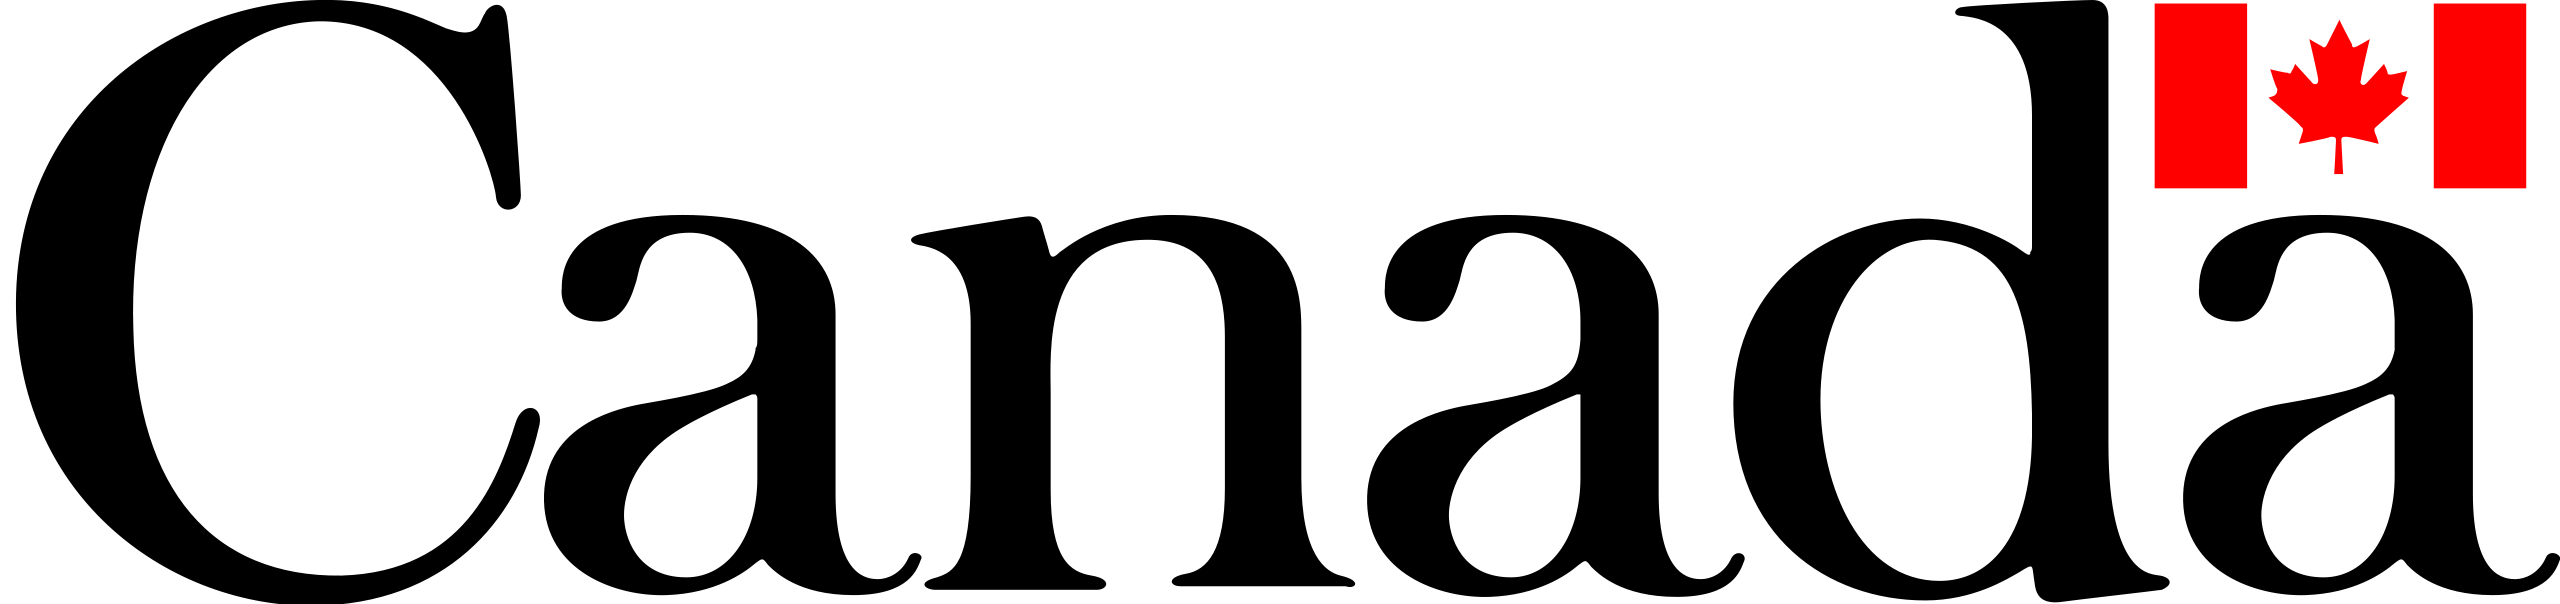 logo du gouvernement du canada